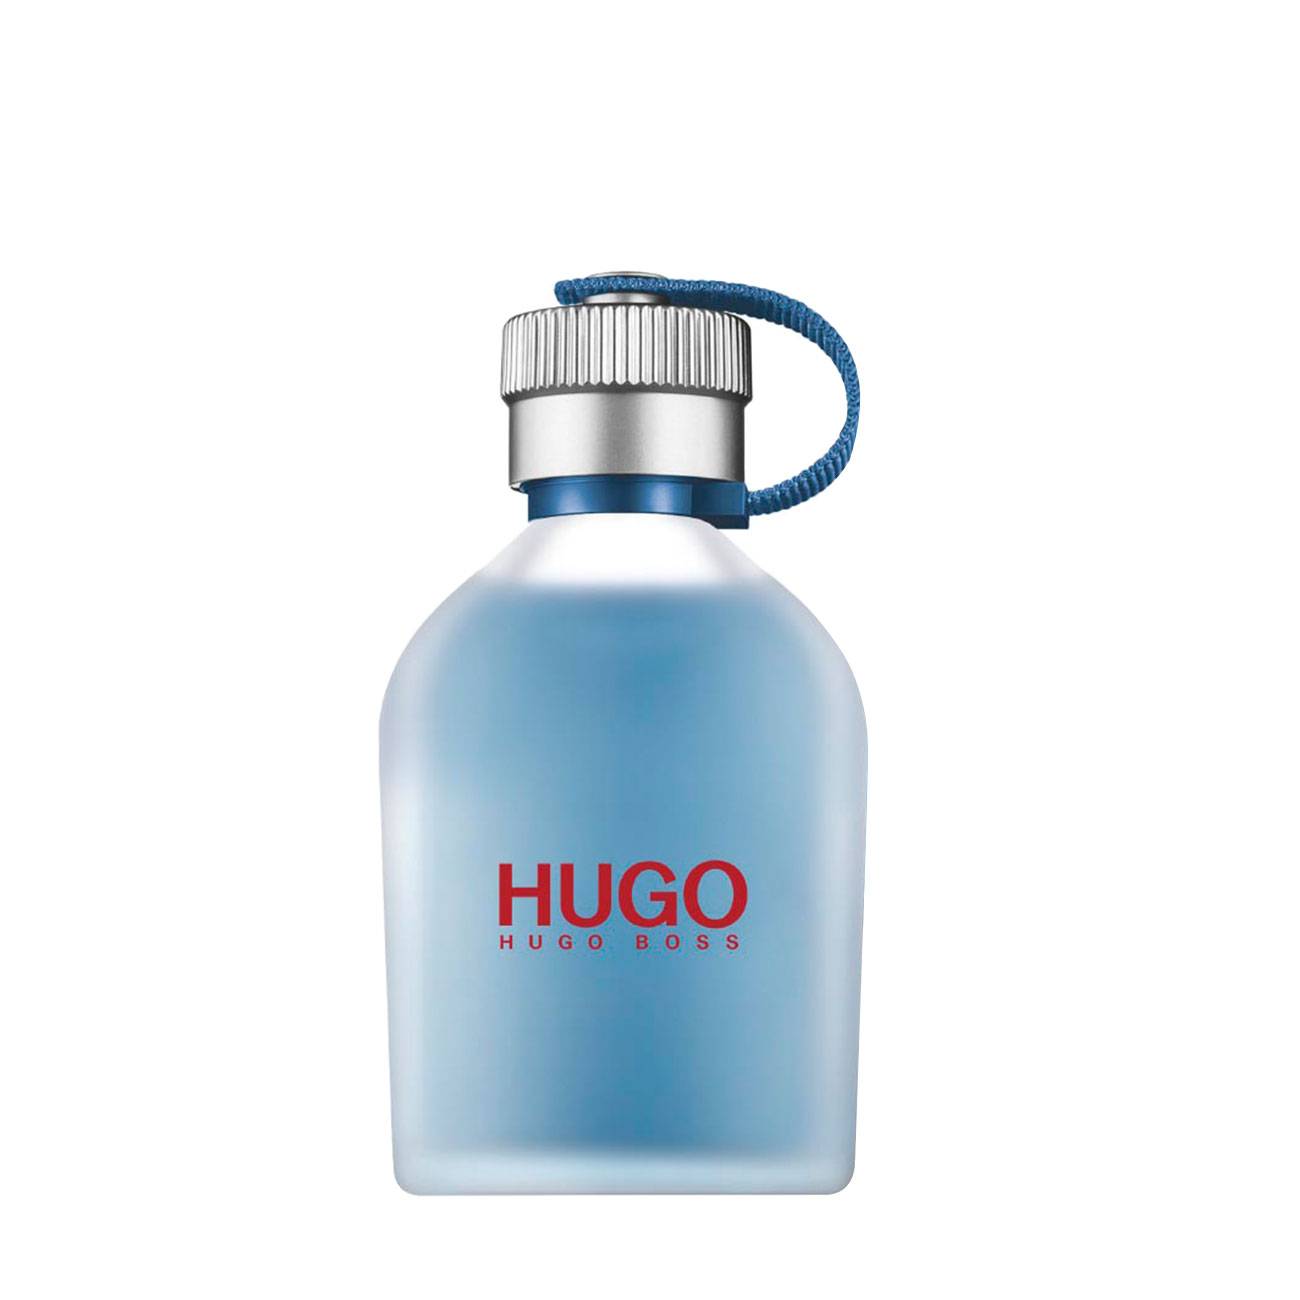 Apa de Toaleta Hugo Boss HUGO NOW 75ml cu comanda online